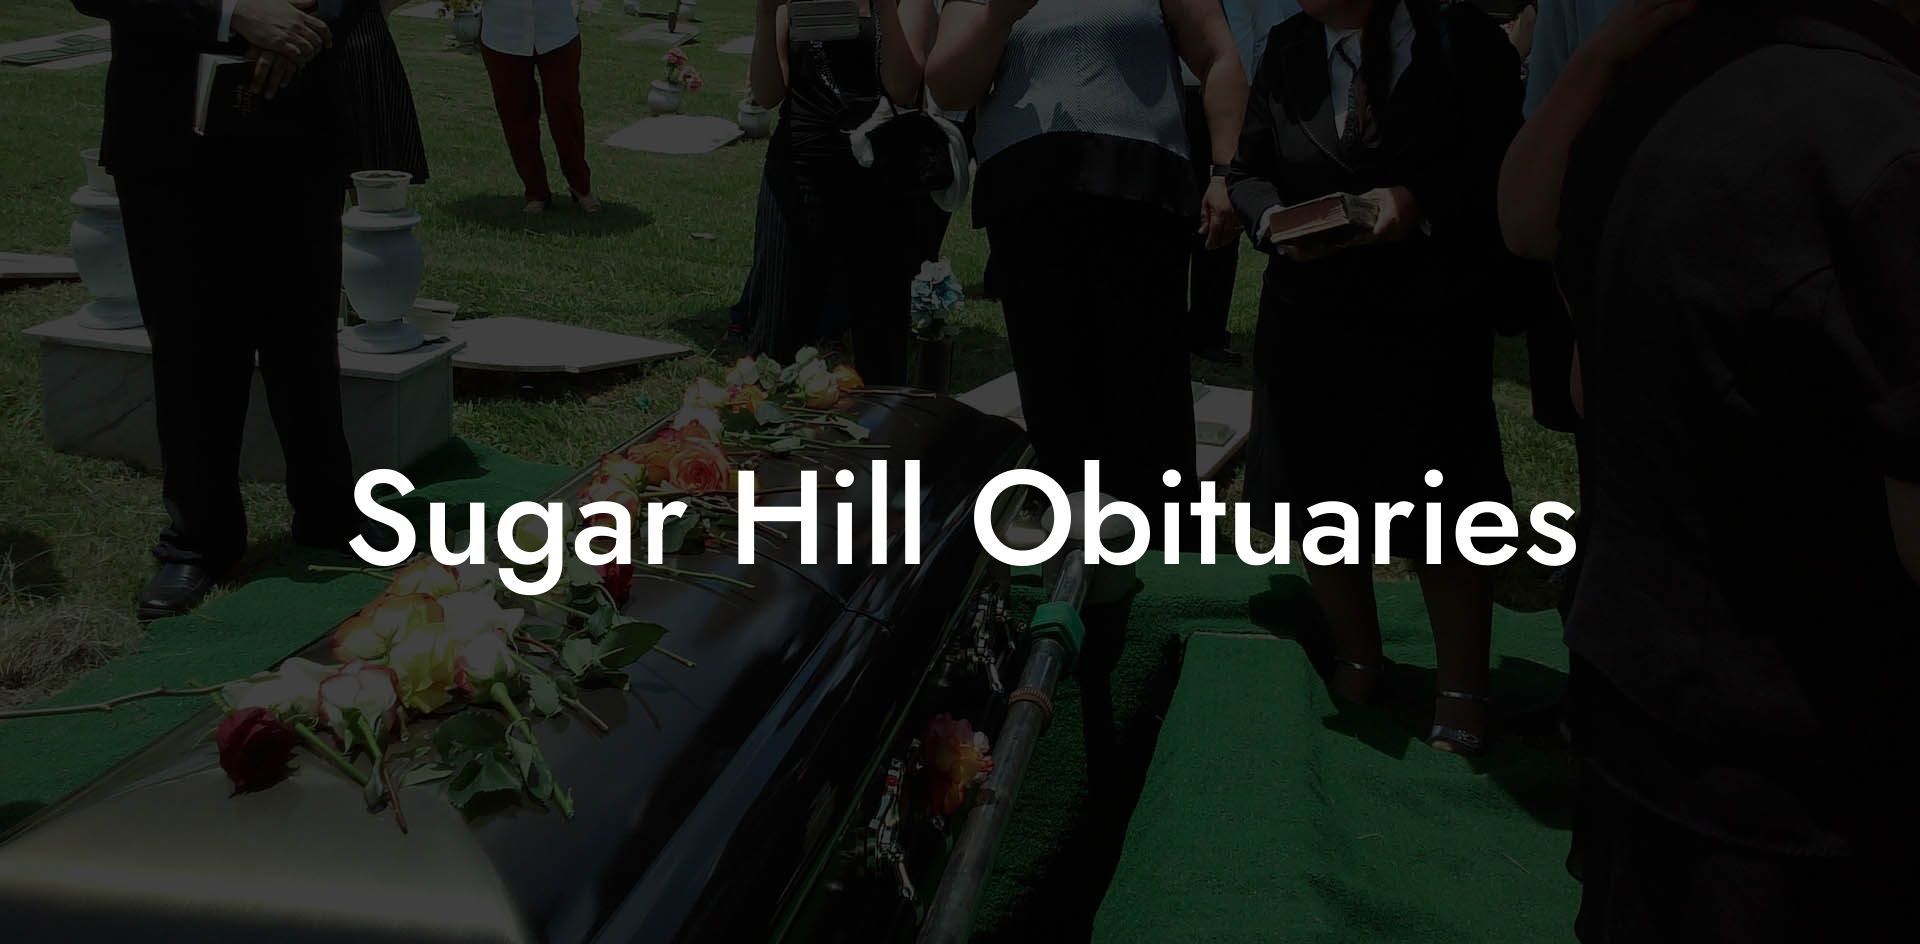 Sugar Hill Obituaries